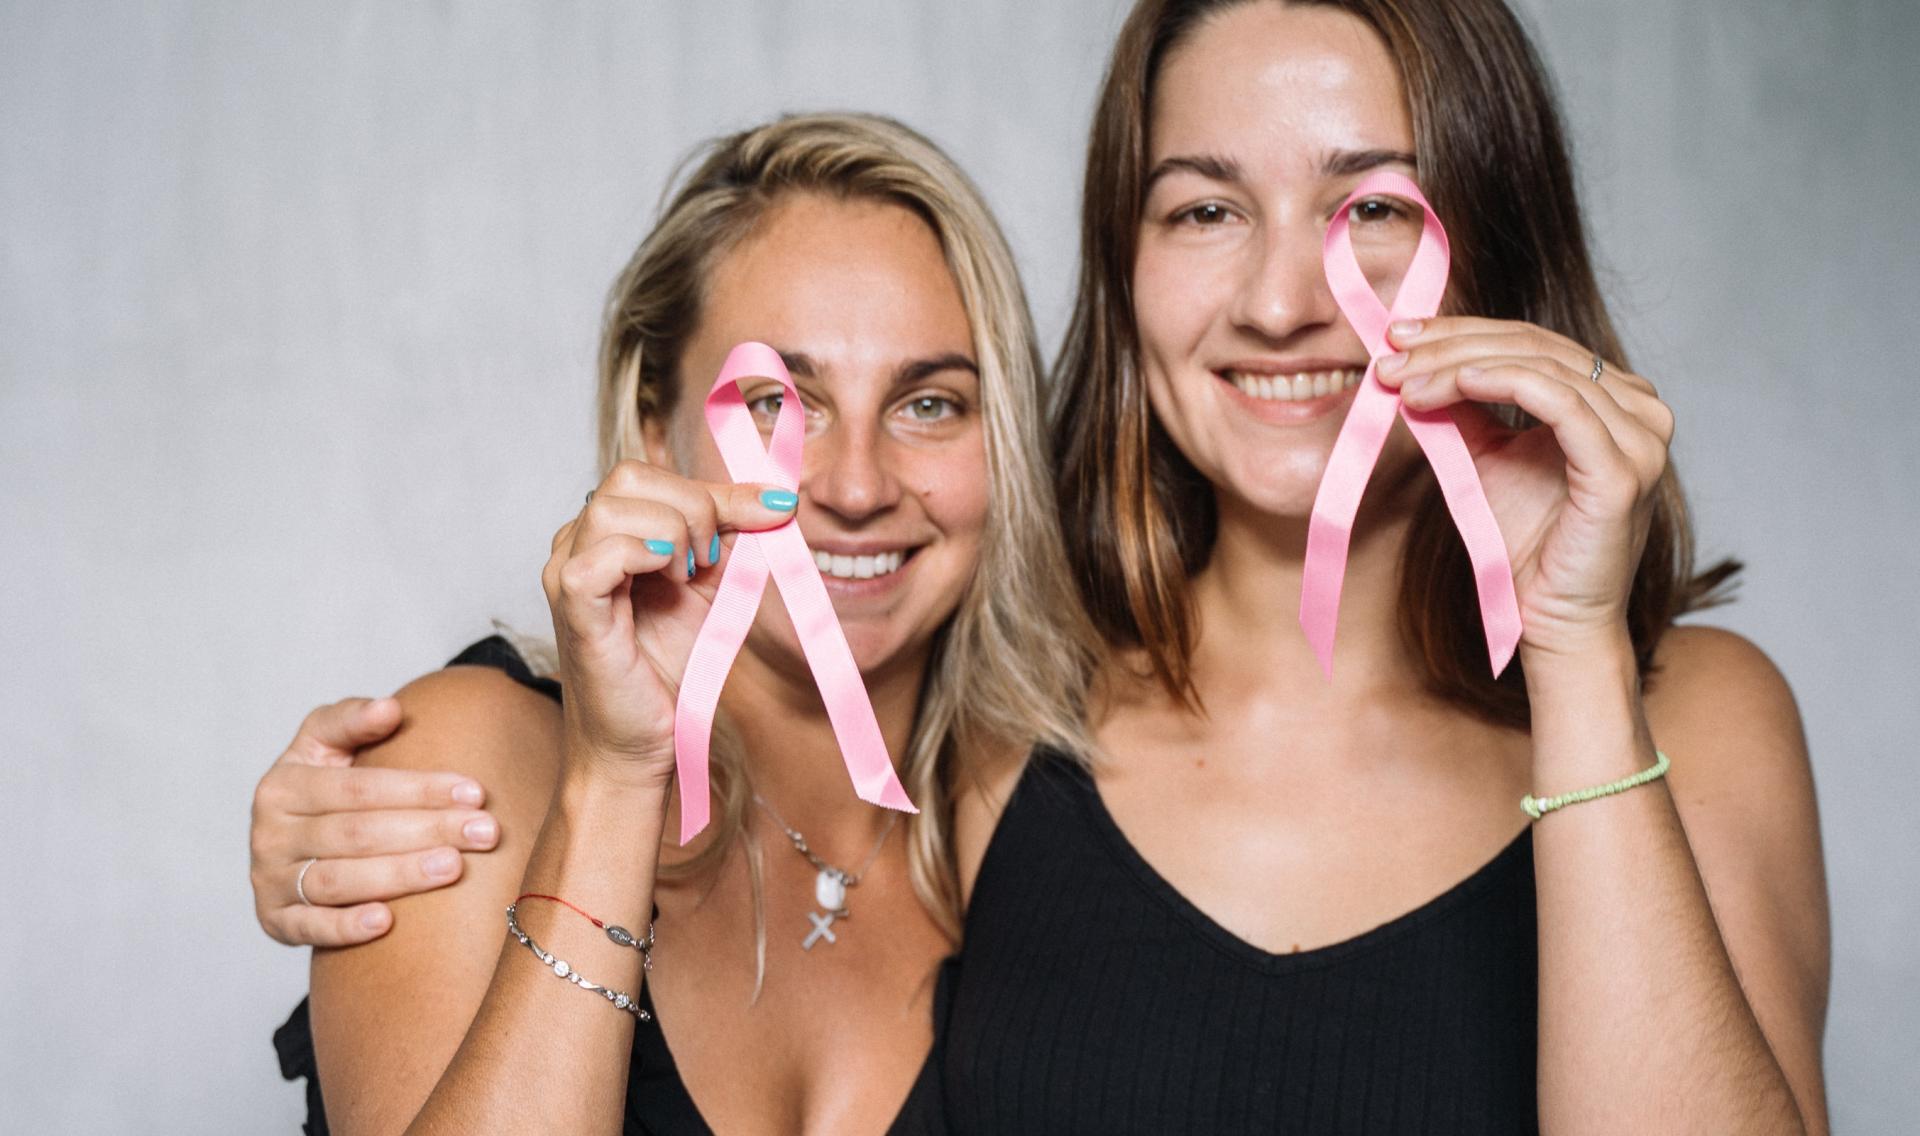 Zwei Frauen stehen Arm in Arm nebeneinander, lächeln und halten zwei rosa Krebs Ribbons. Rosa Krebs Ribbons stehen für Brustkrebs.